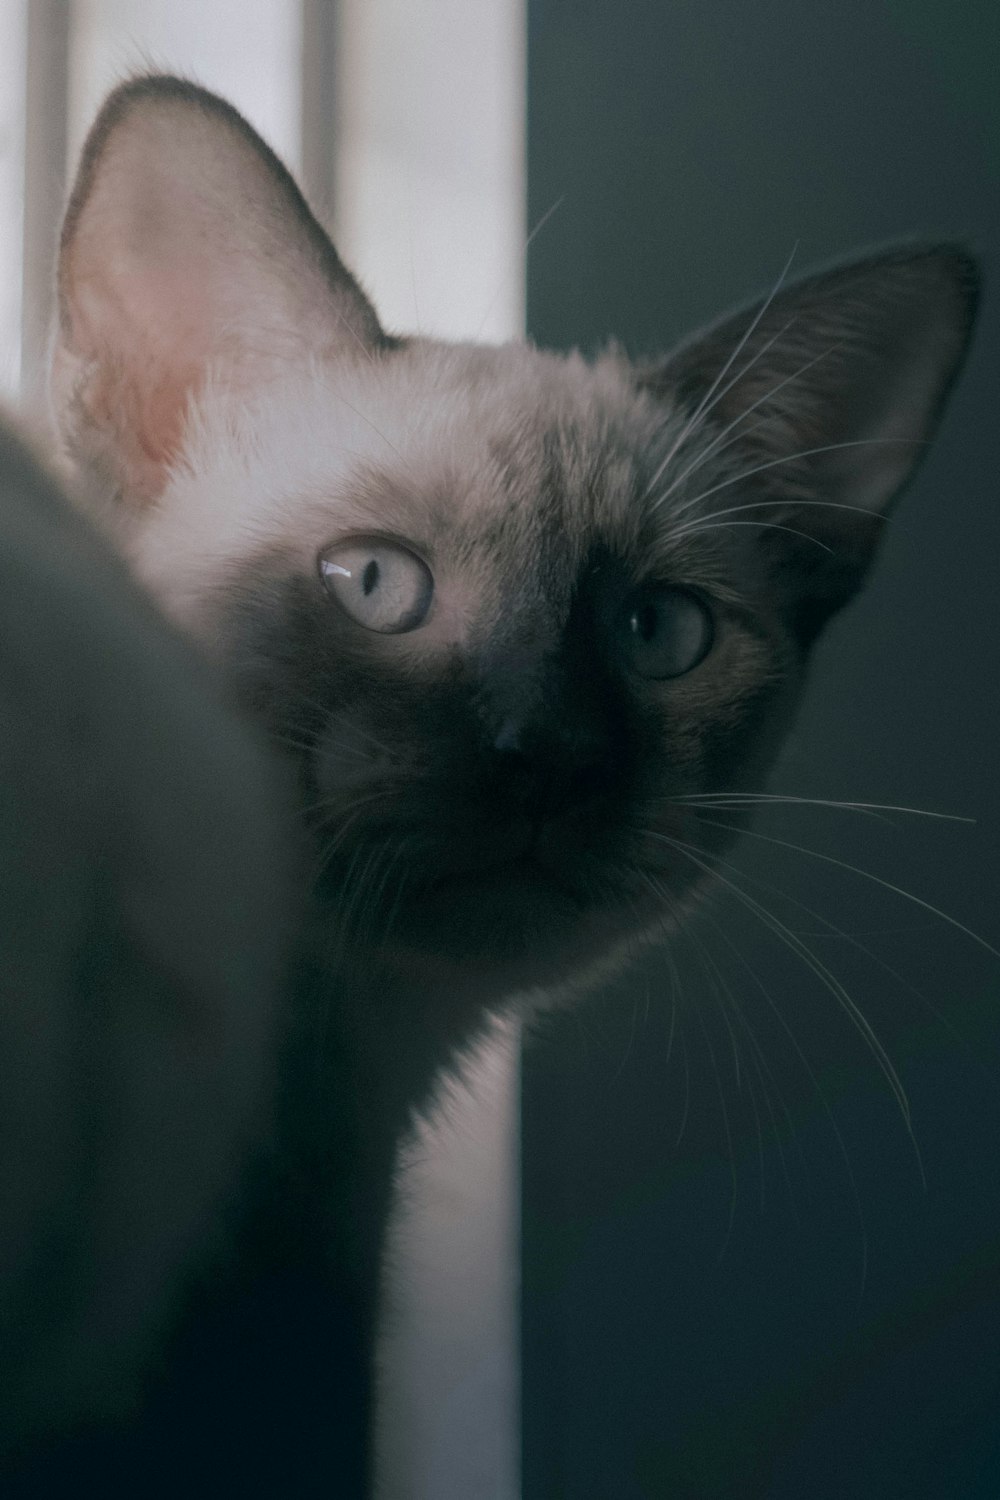 a close up of a cat near a window